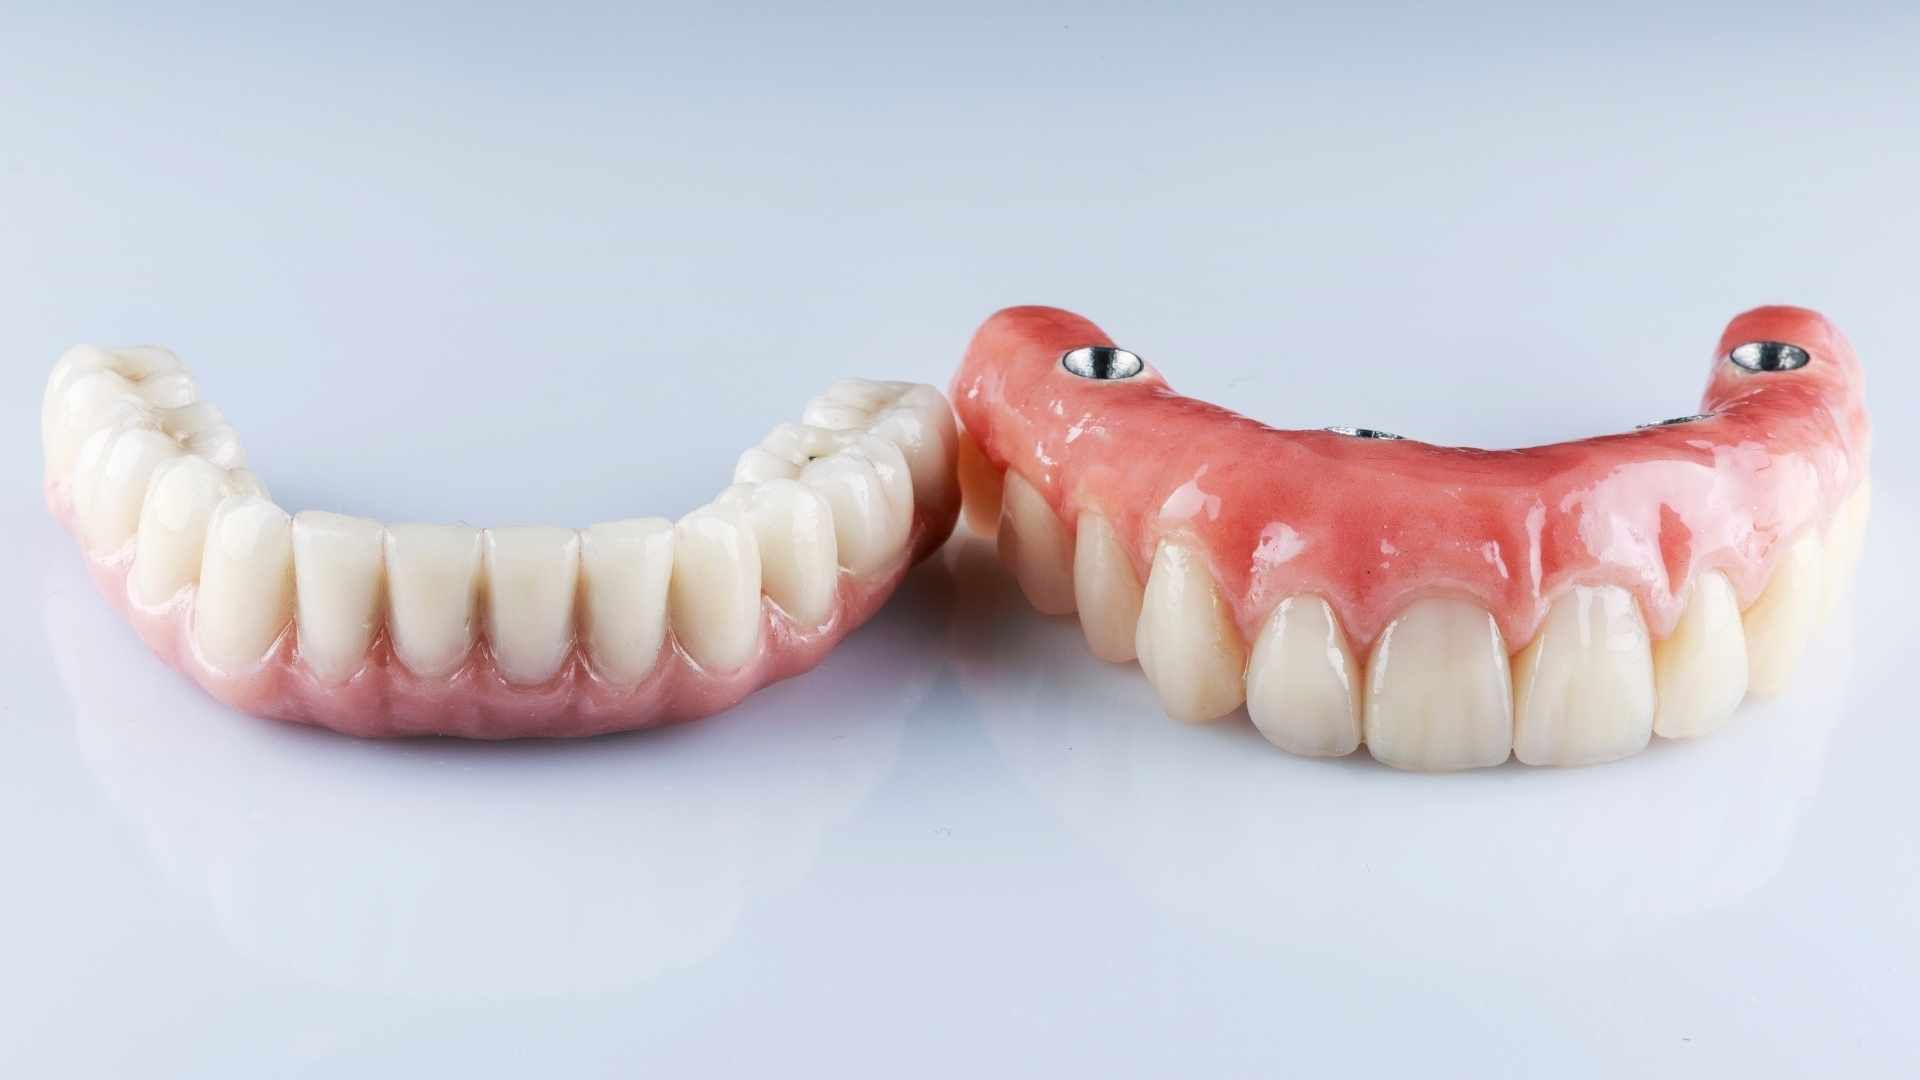 دندان پروتز متحرک (دندان مصنوعی کامل) یک فک دکتر مینو باقری خولنجانی در اصفهان 1